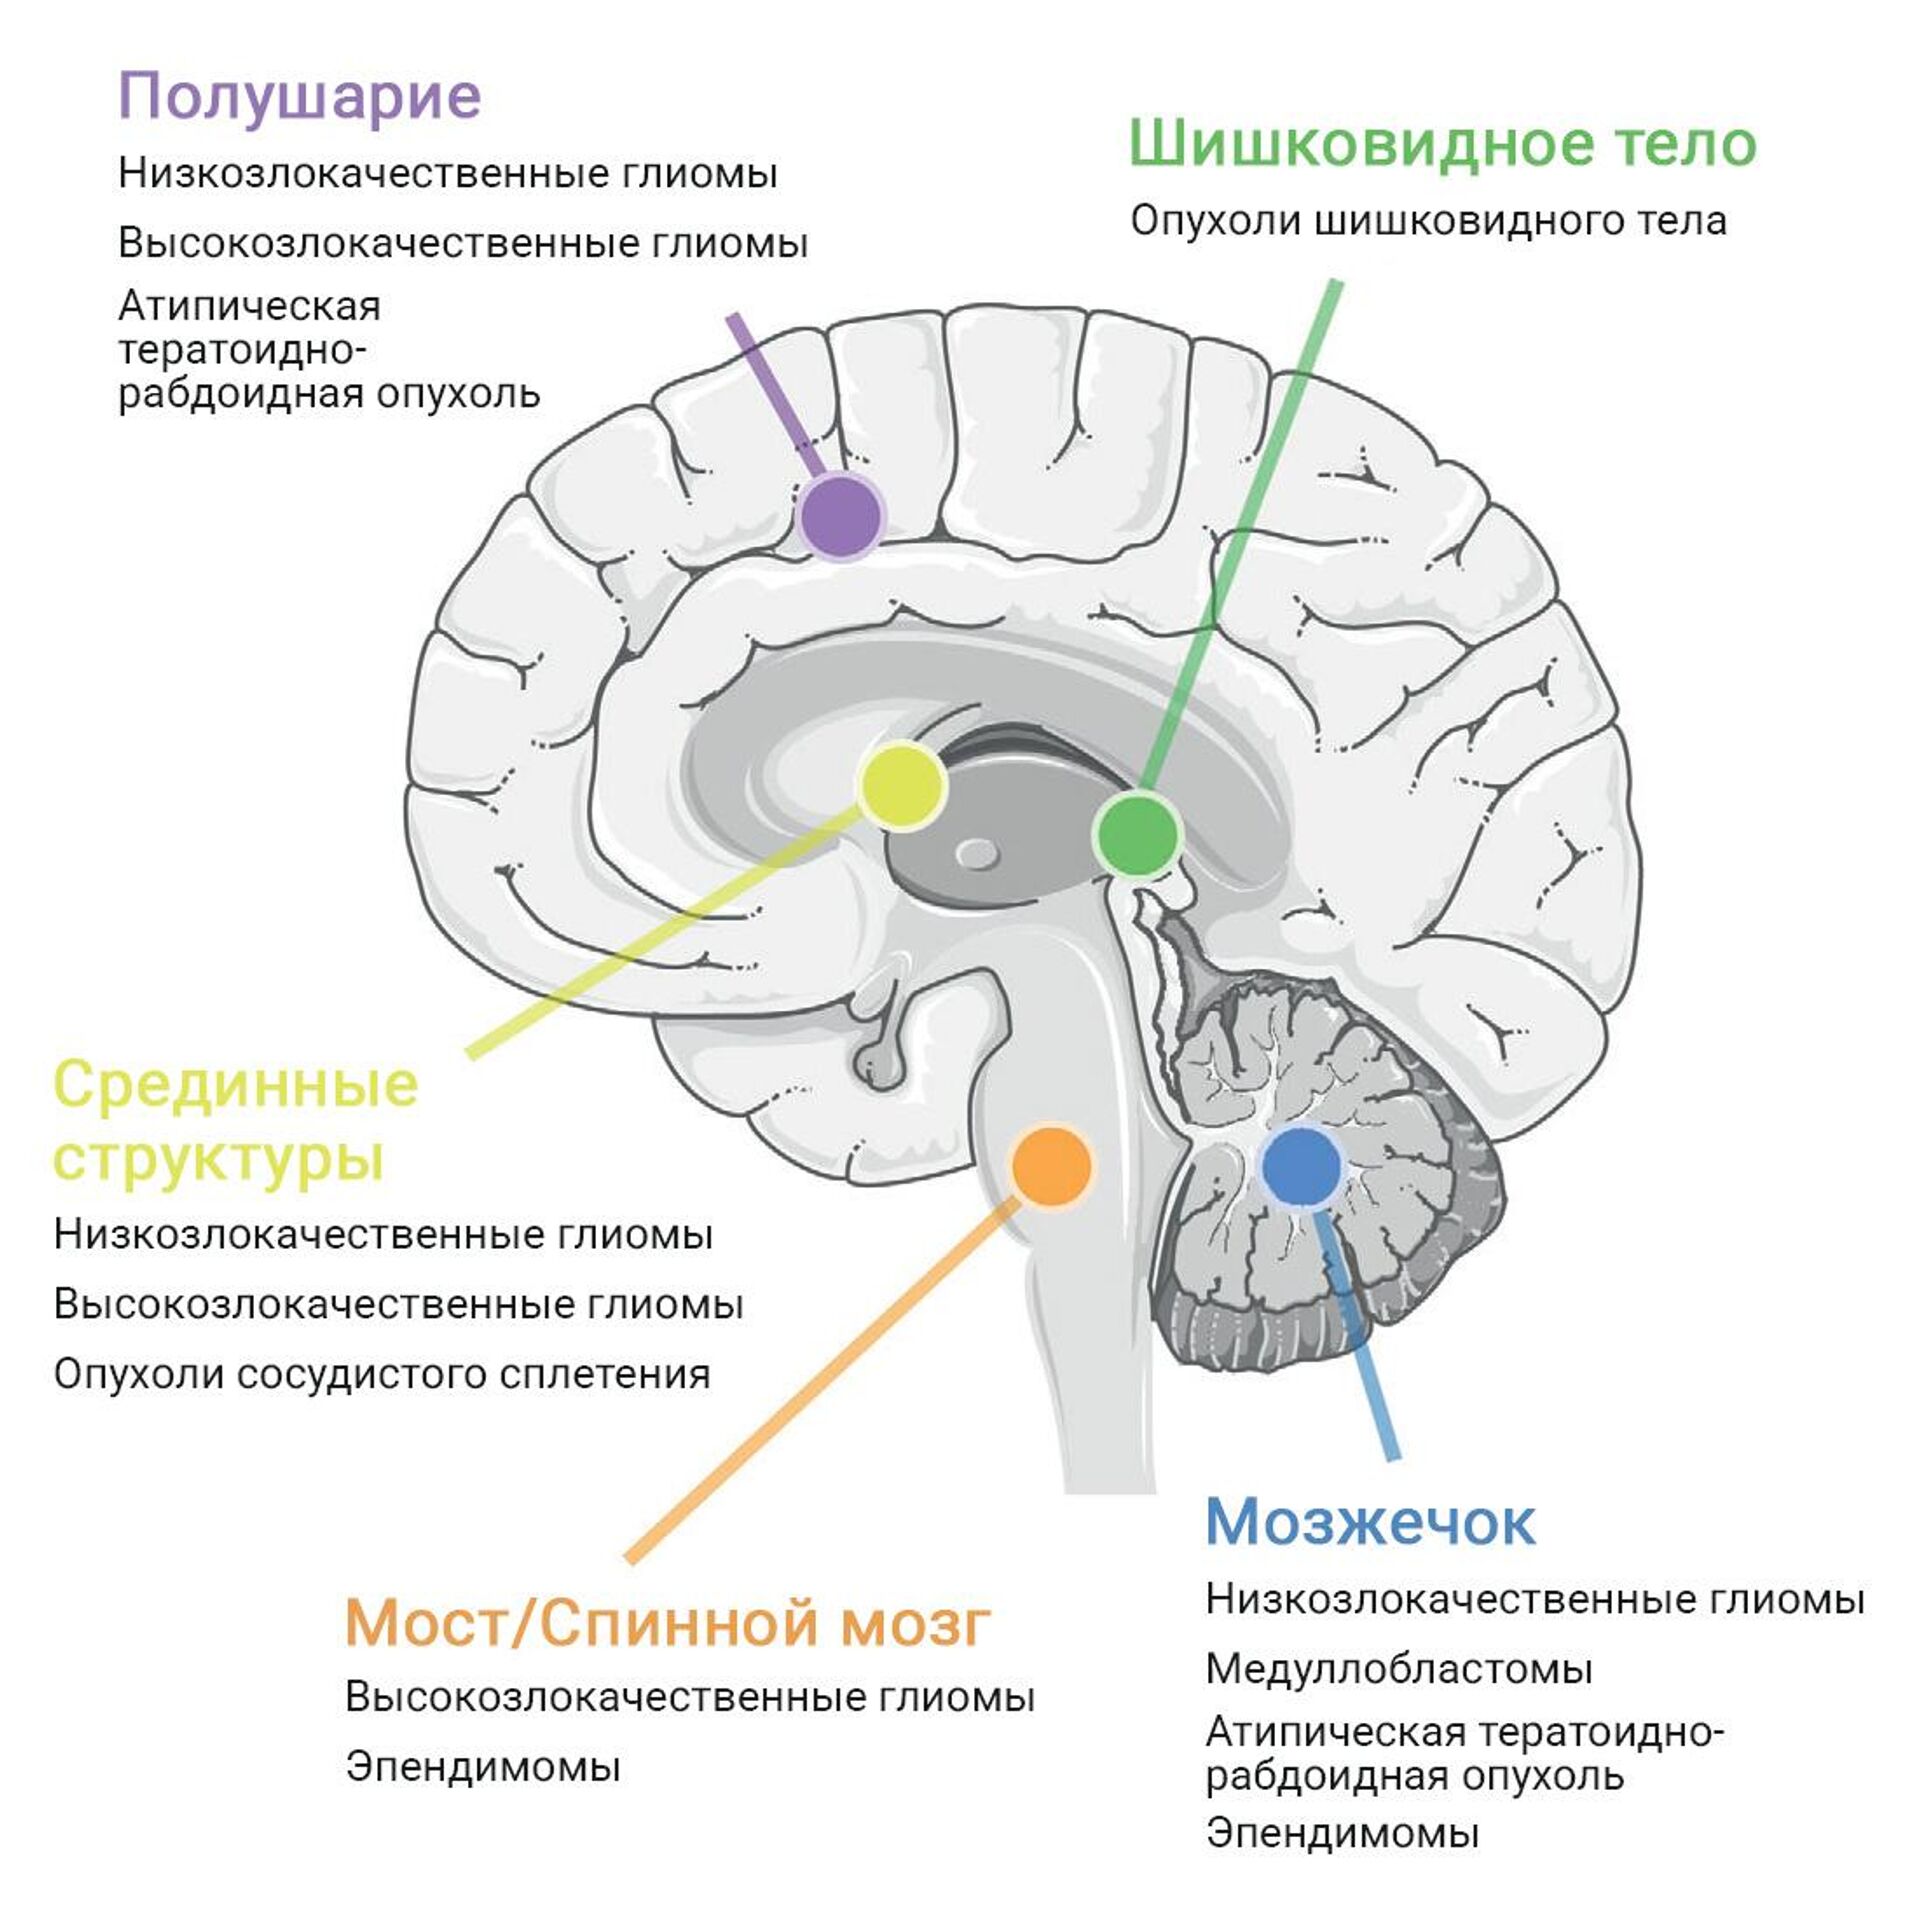 Ученые из России нашли средства борьбы с неизлечимыми опухолями мозга - РИА  Новости, 26.07.2023